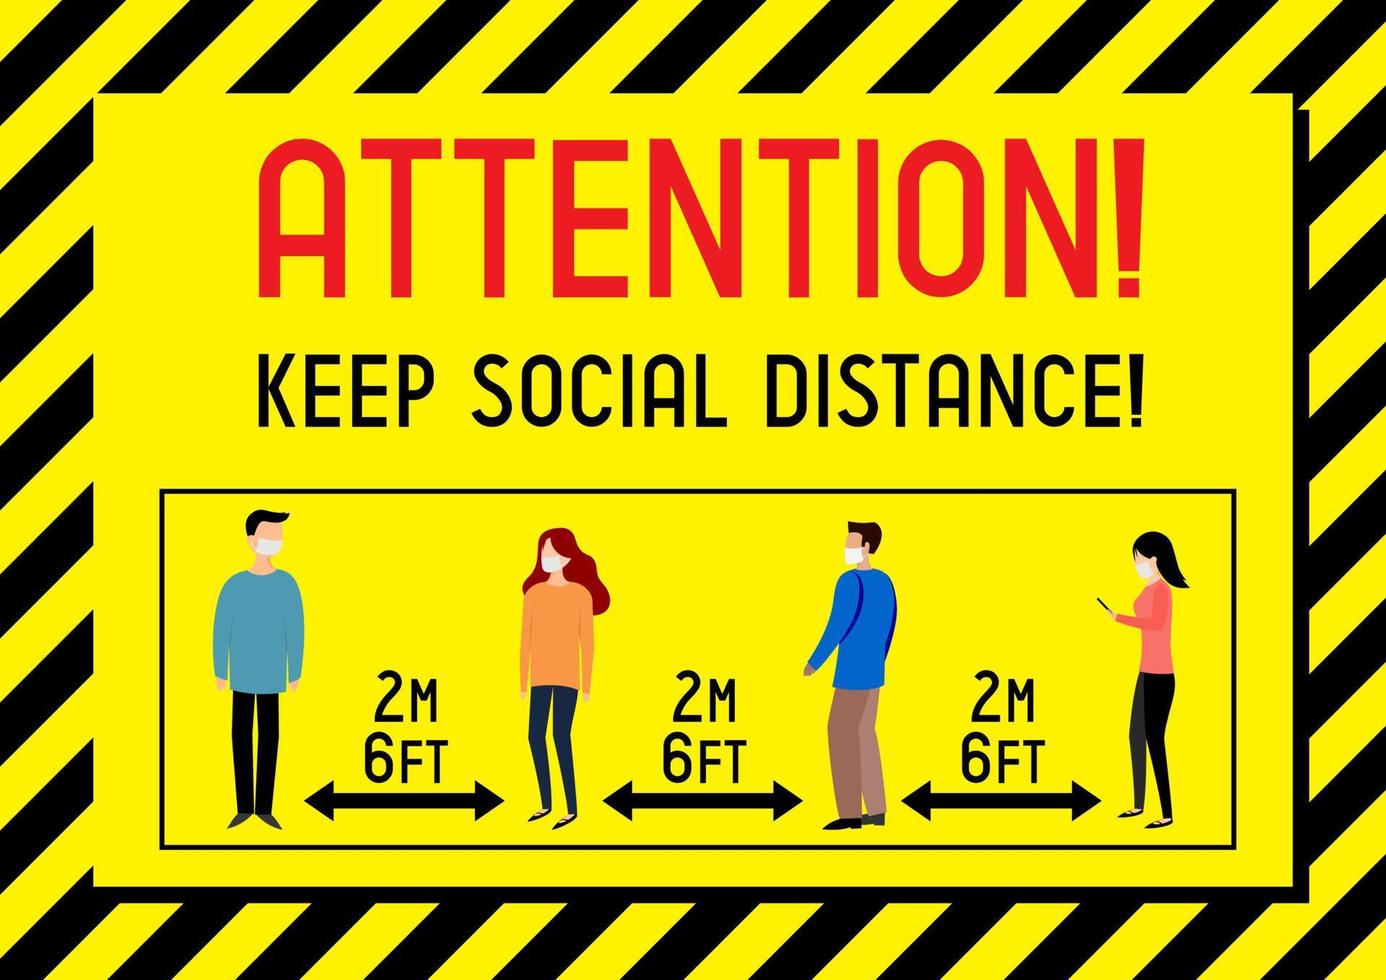 Plakat über das Halten sozialer Distanz vektor